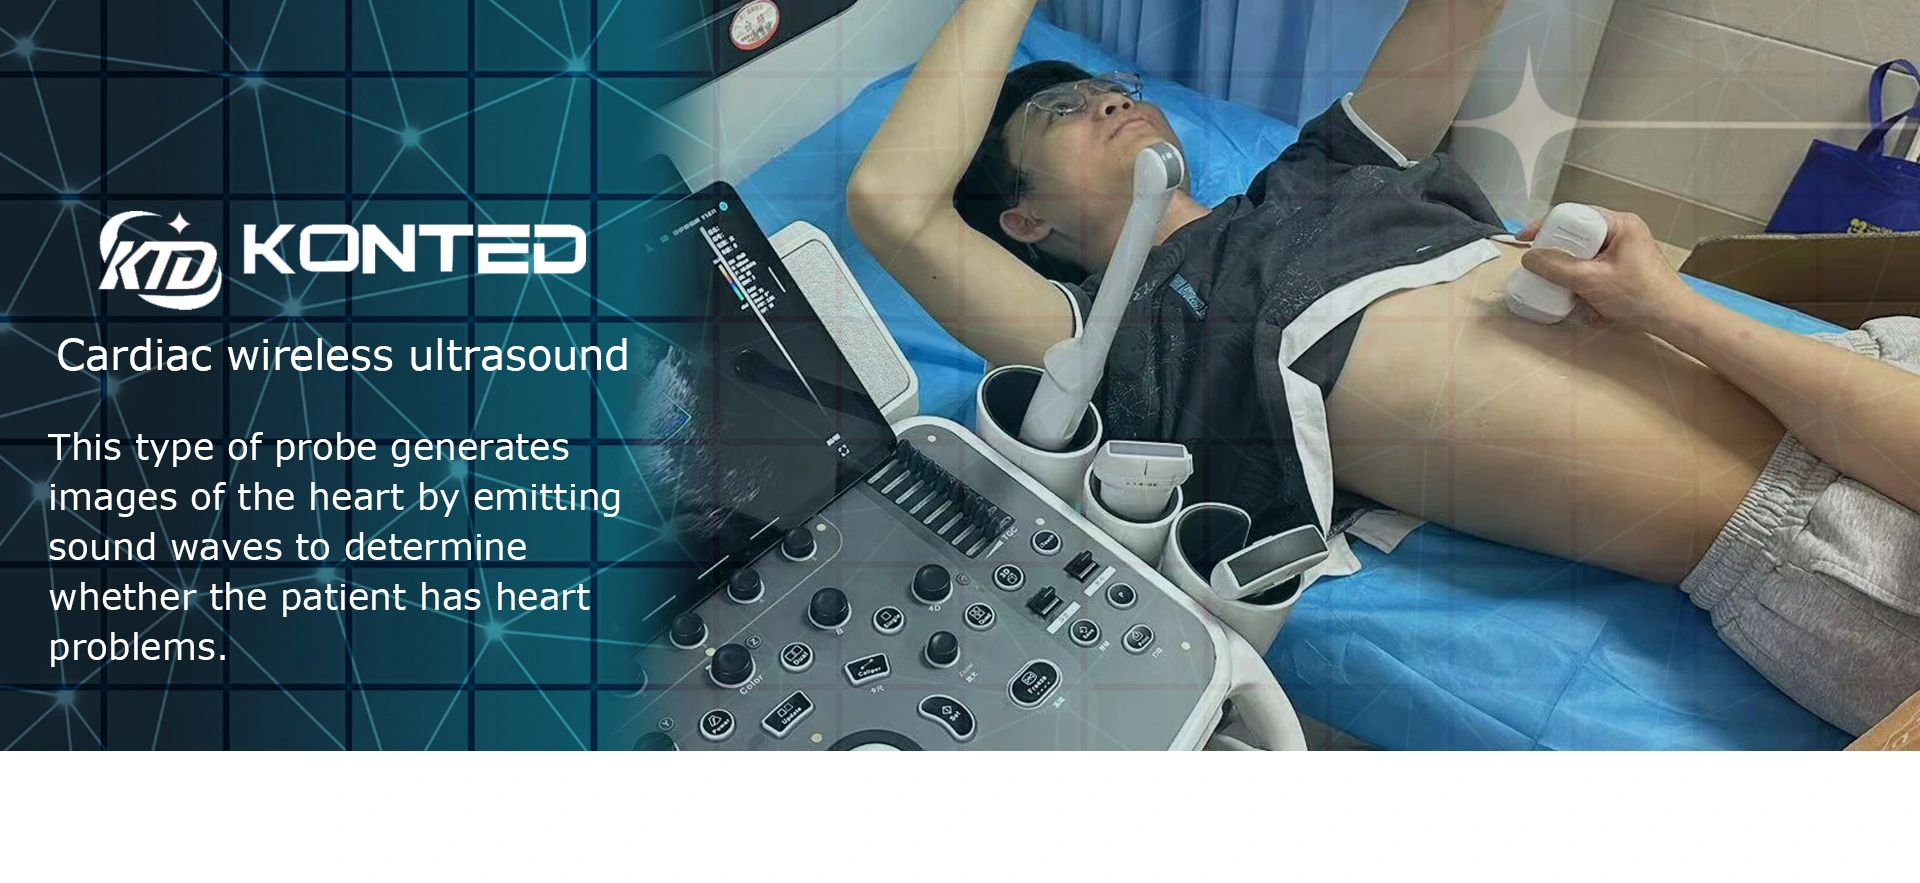 Cardiac wireless ultrasound